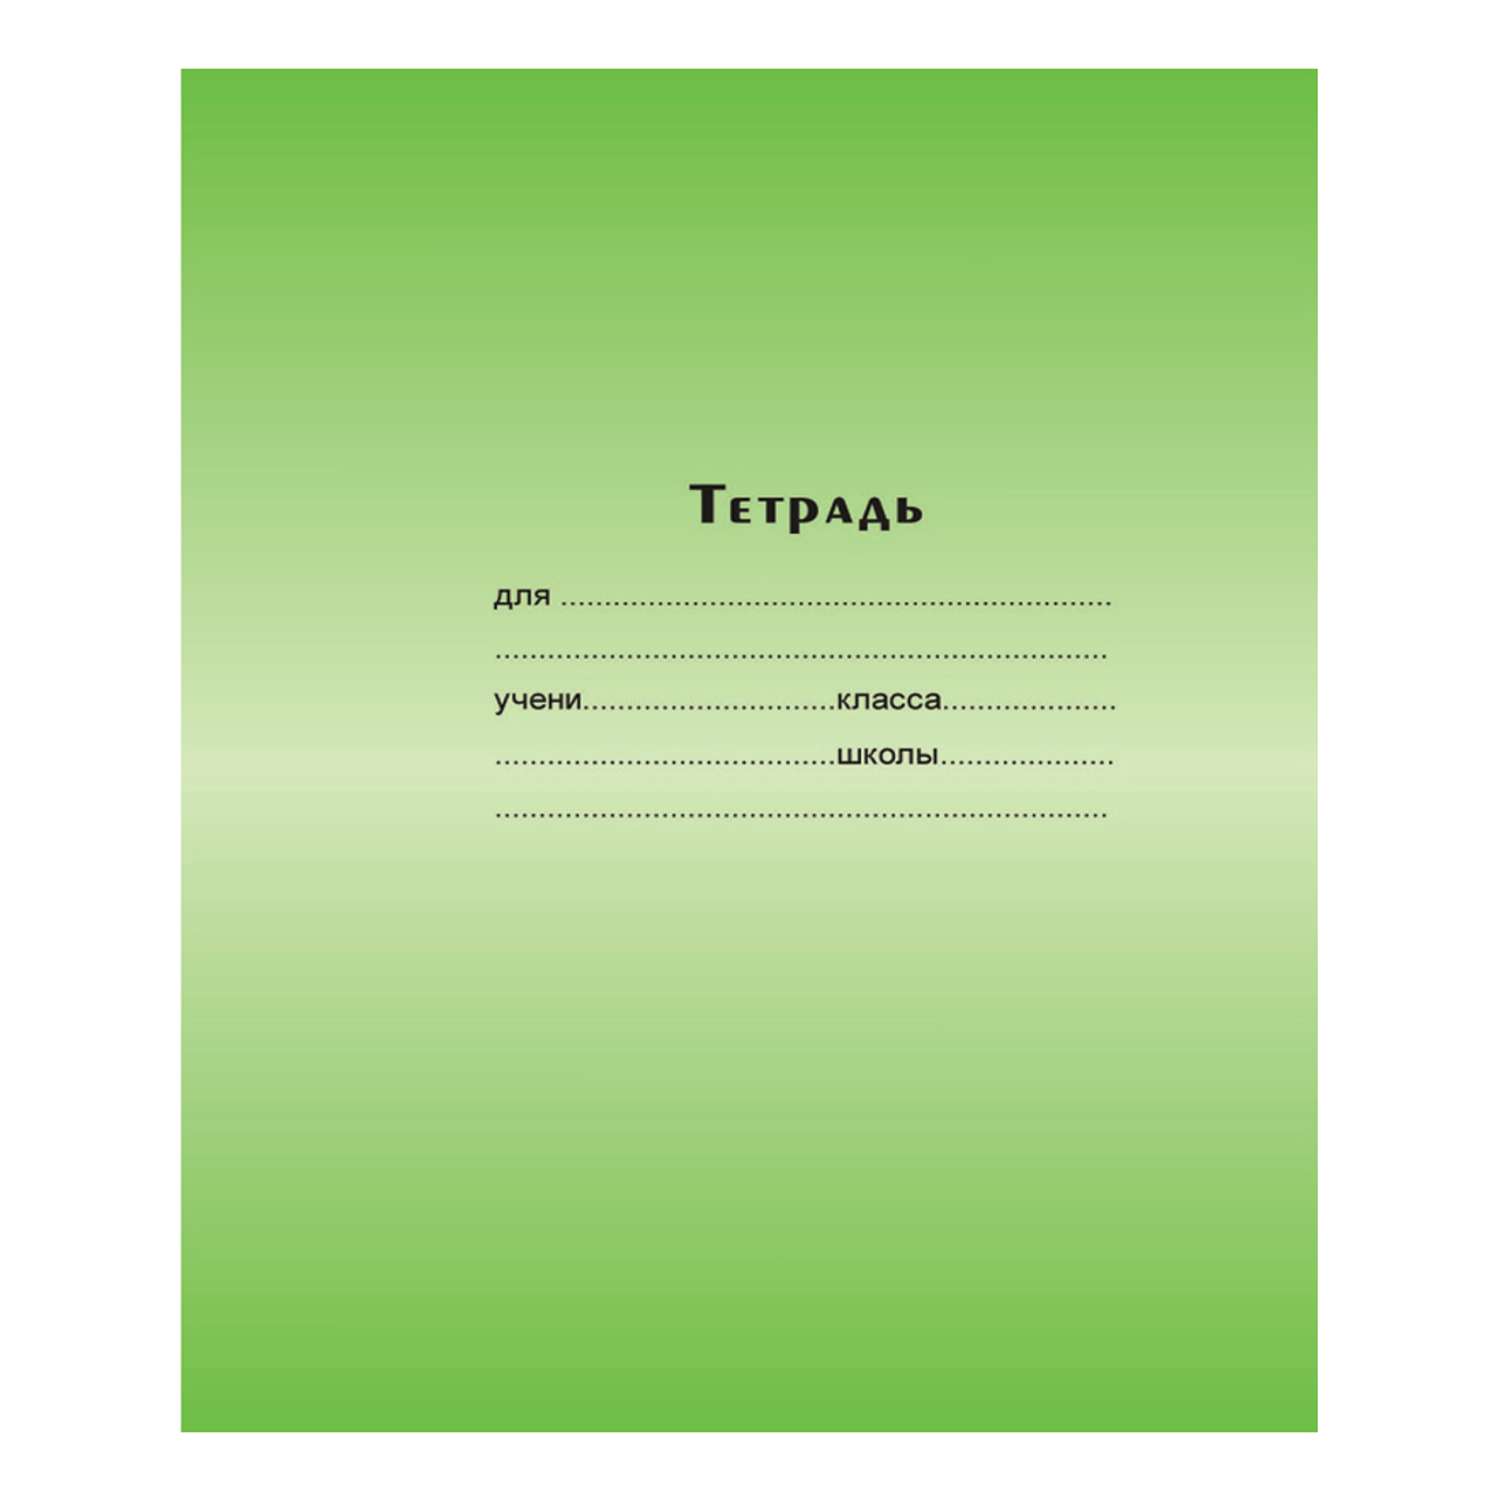 Тетрадь Мировые тетради мелованая обложка Узкая линейка 12л Зеленая - фото 1